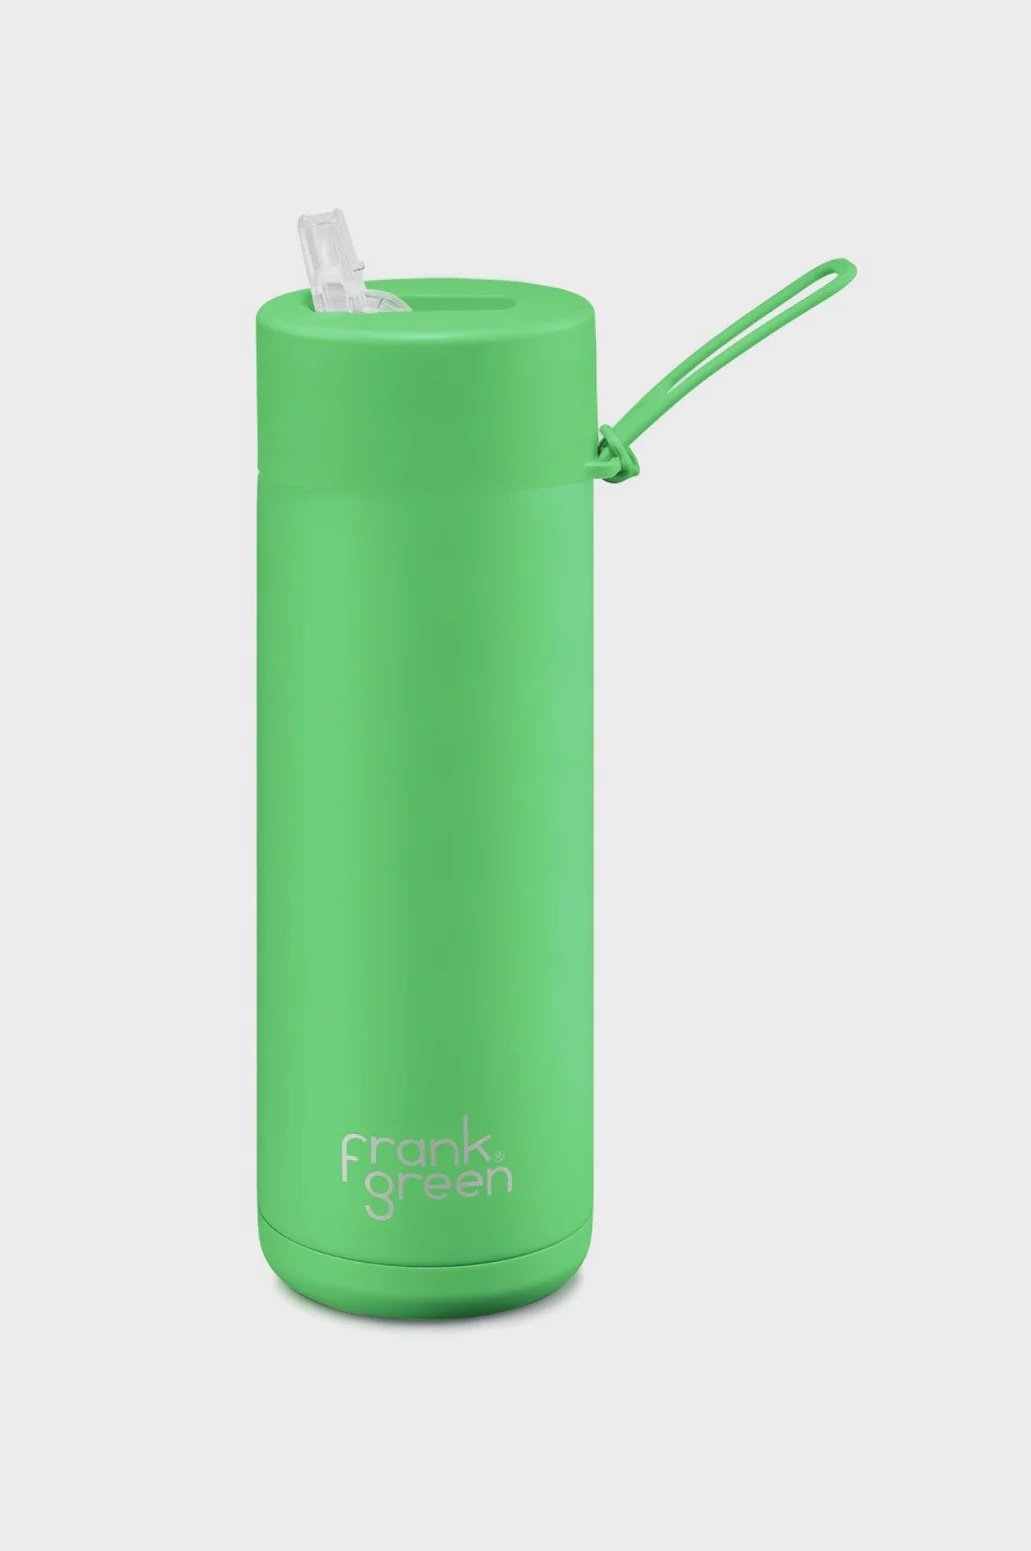 Frank green ceramic reusable bottle - 20oz / 595ml - neon green